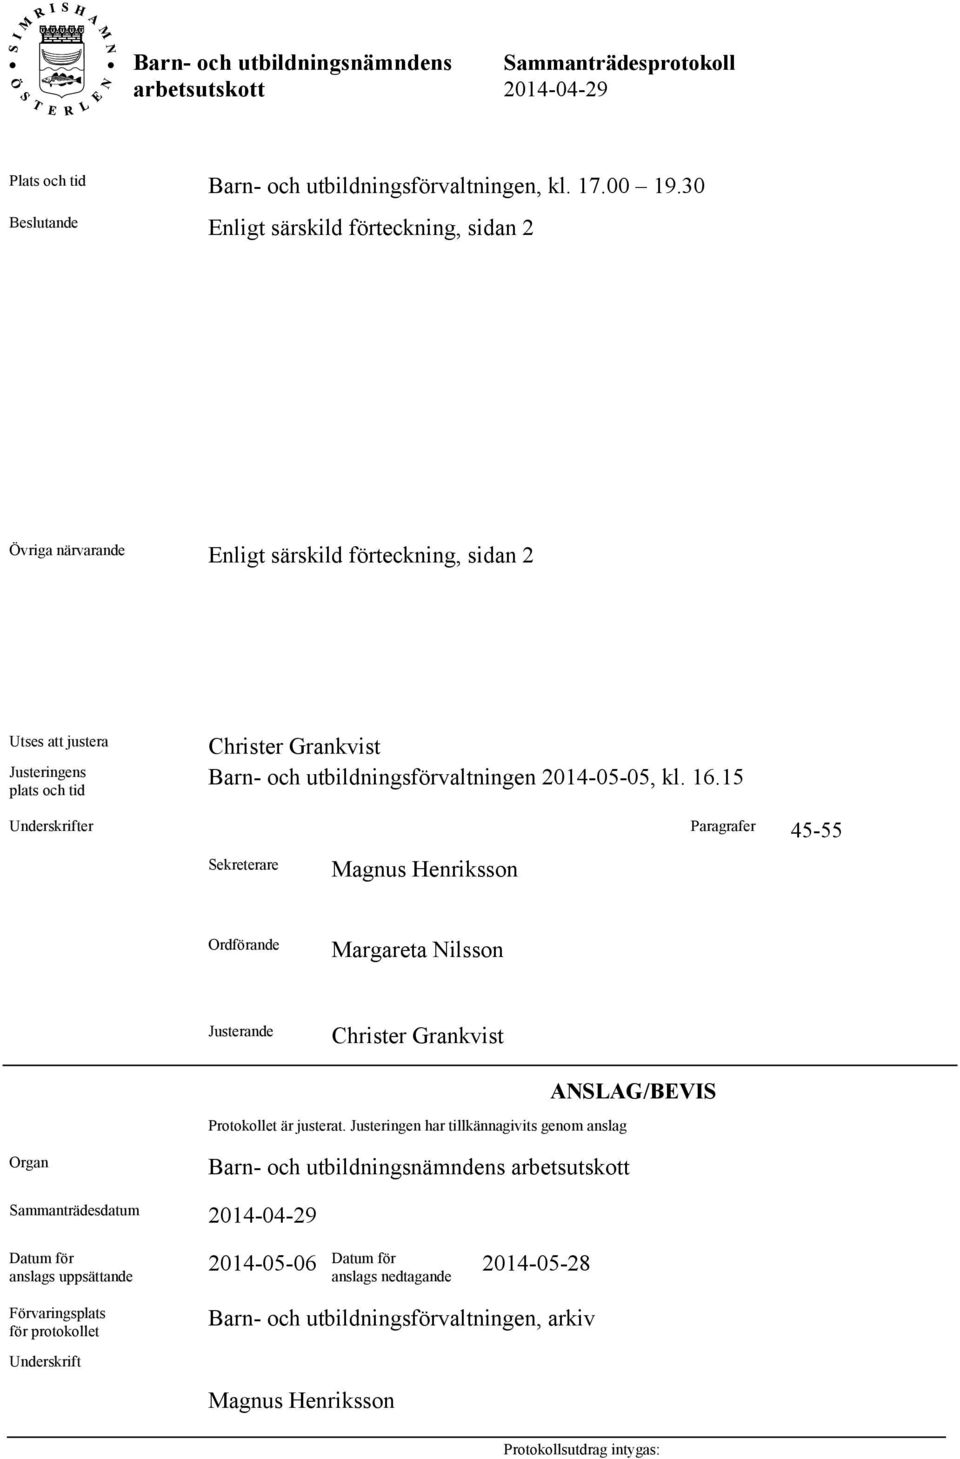 utbildningsförvaltningen 2014-05-05, kl. 16.